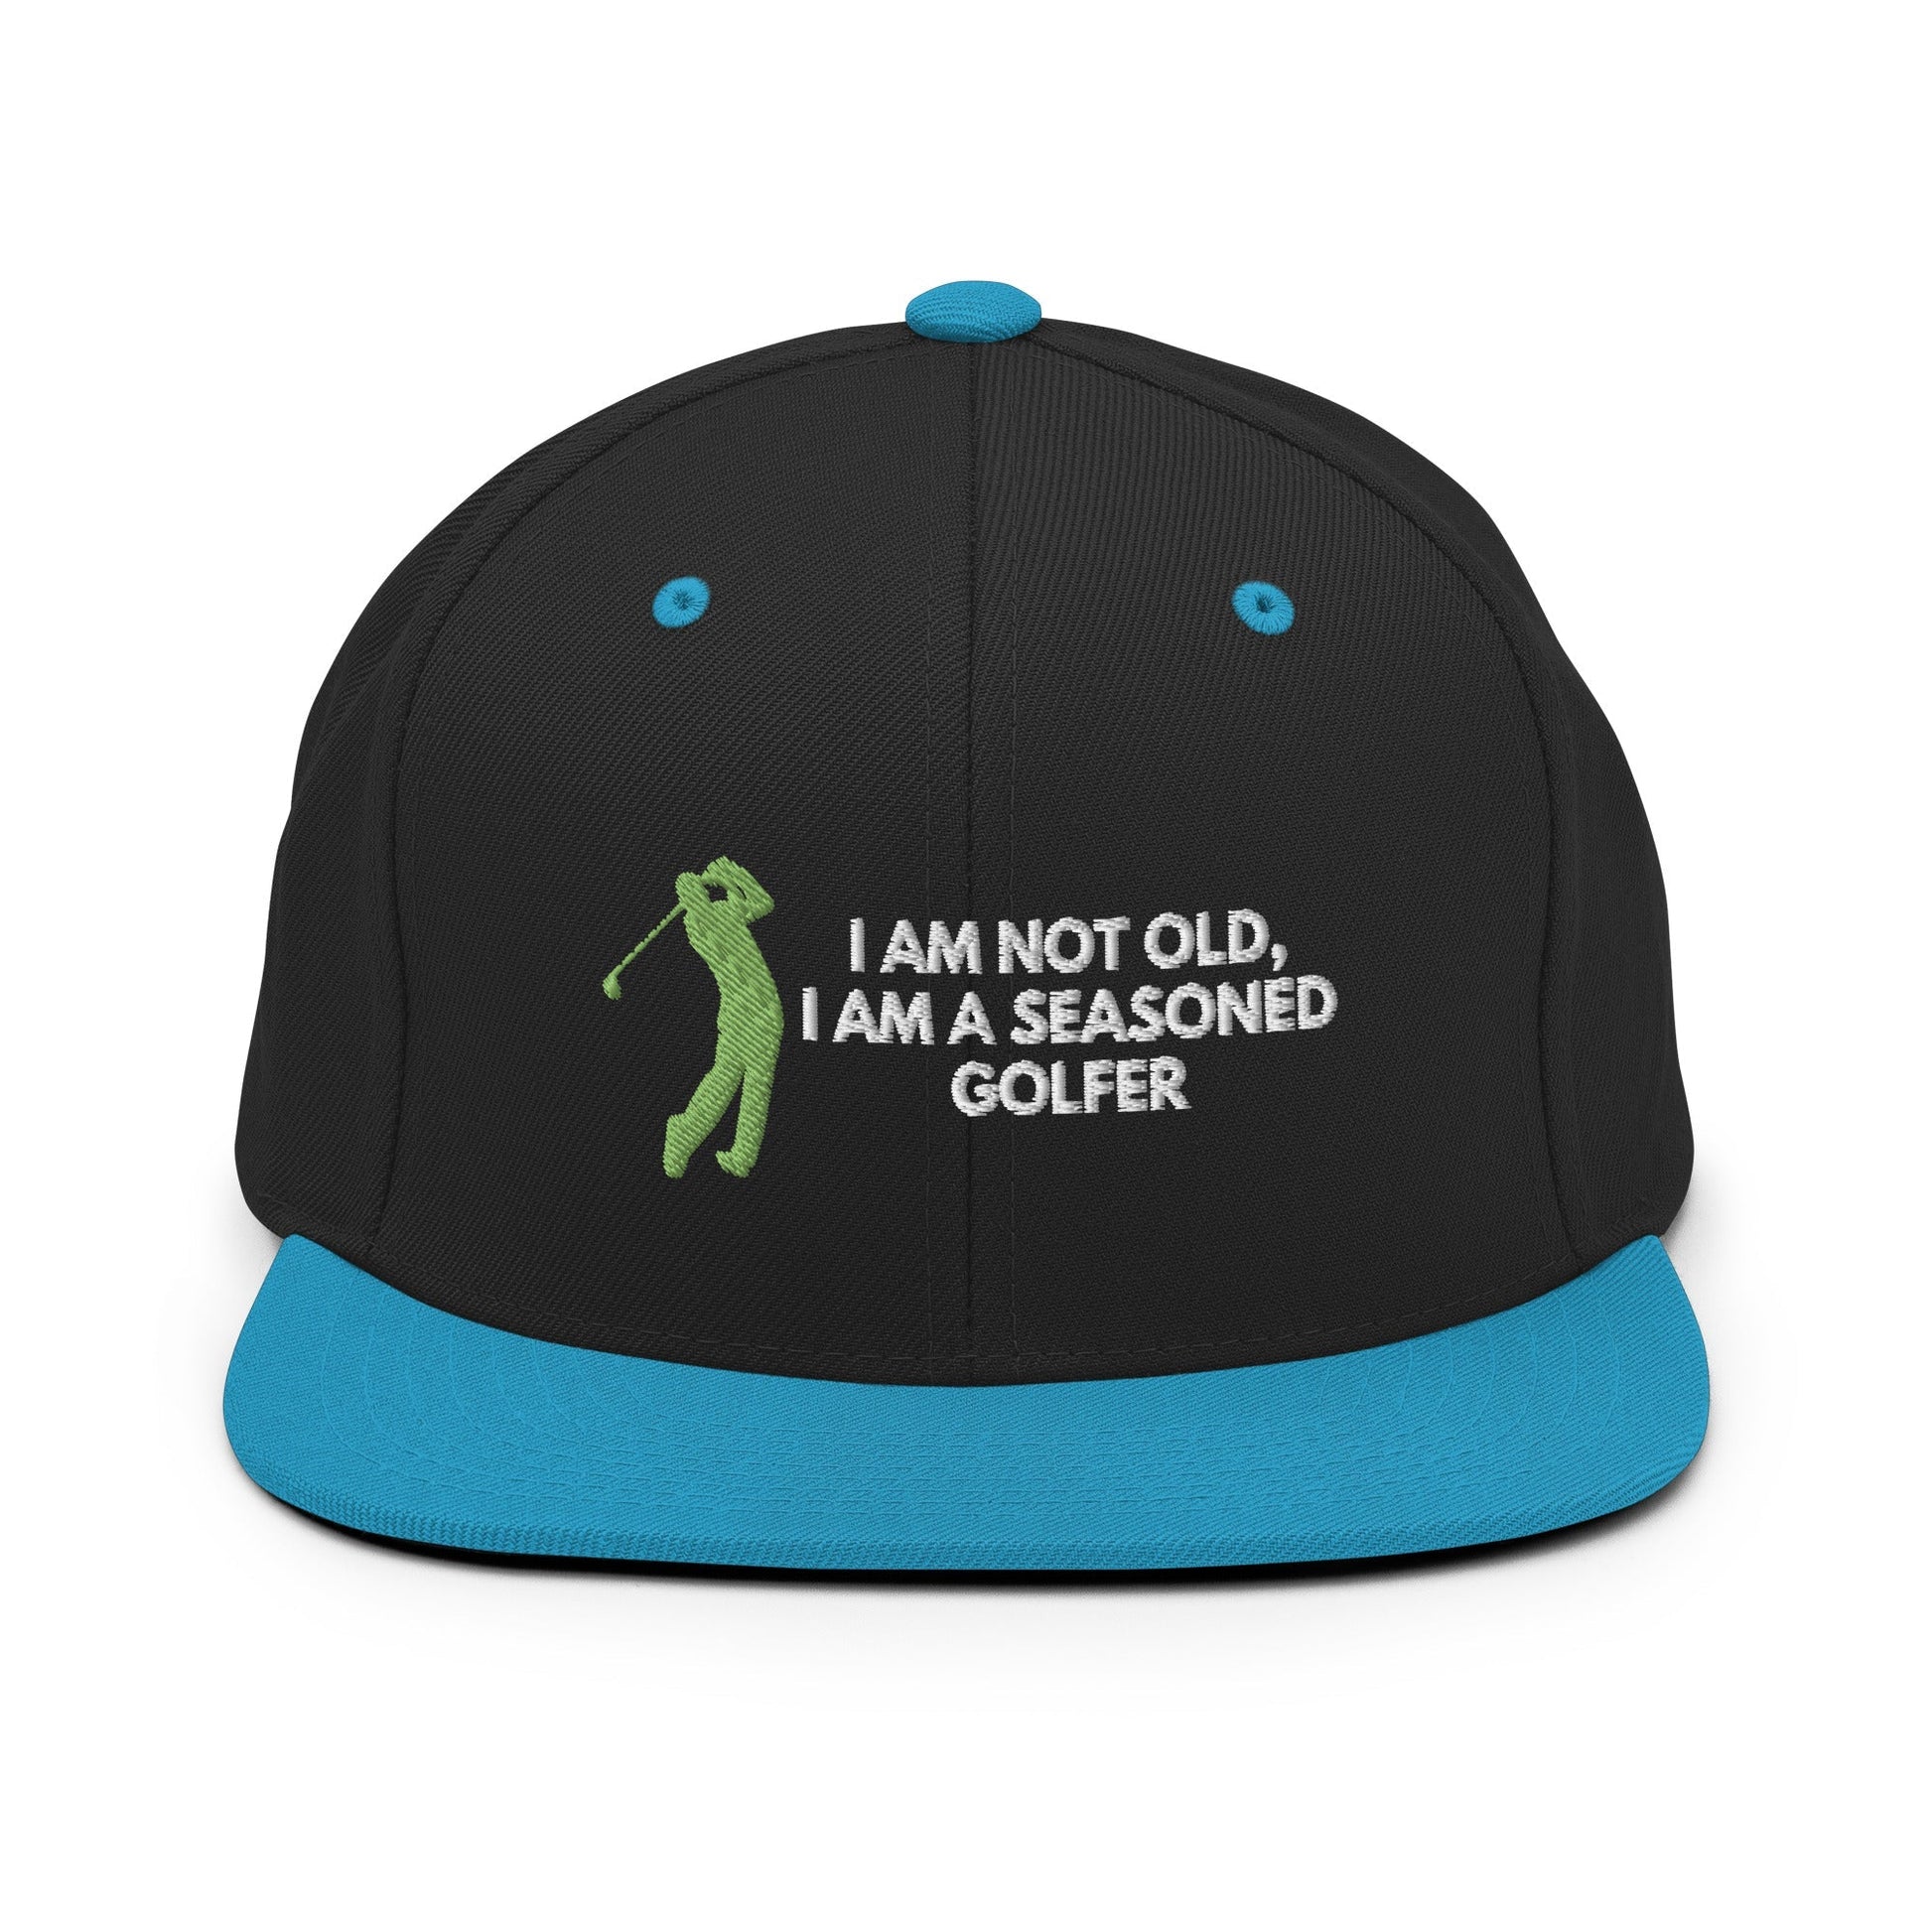 Funny Golfer Gifts  Snapback Hat Black/ Teal Im Not Old I Am A Seasoned Golfer Hat Snapback Hat